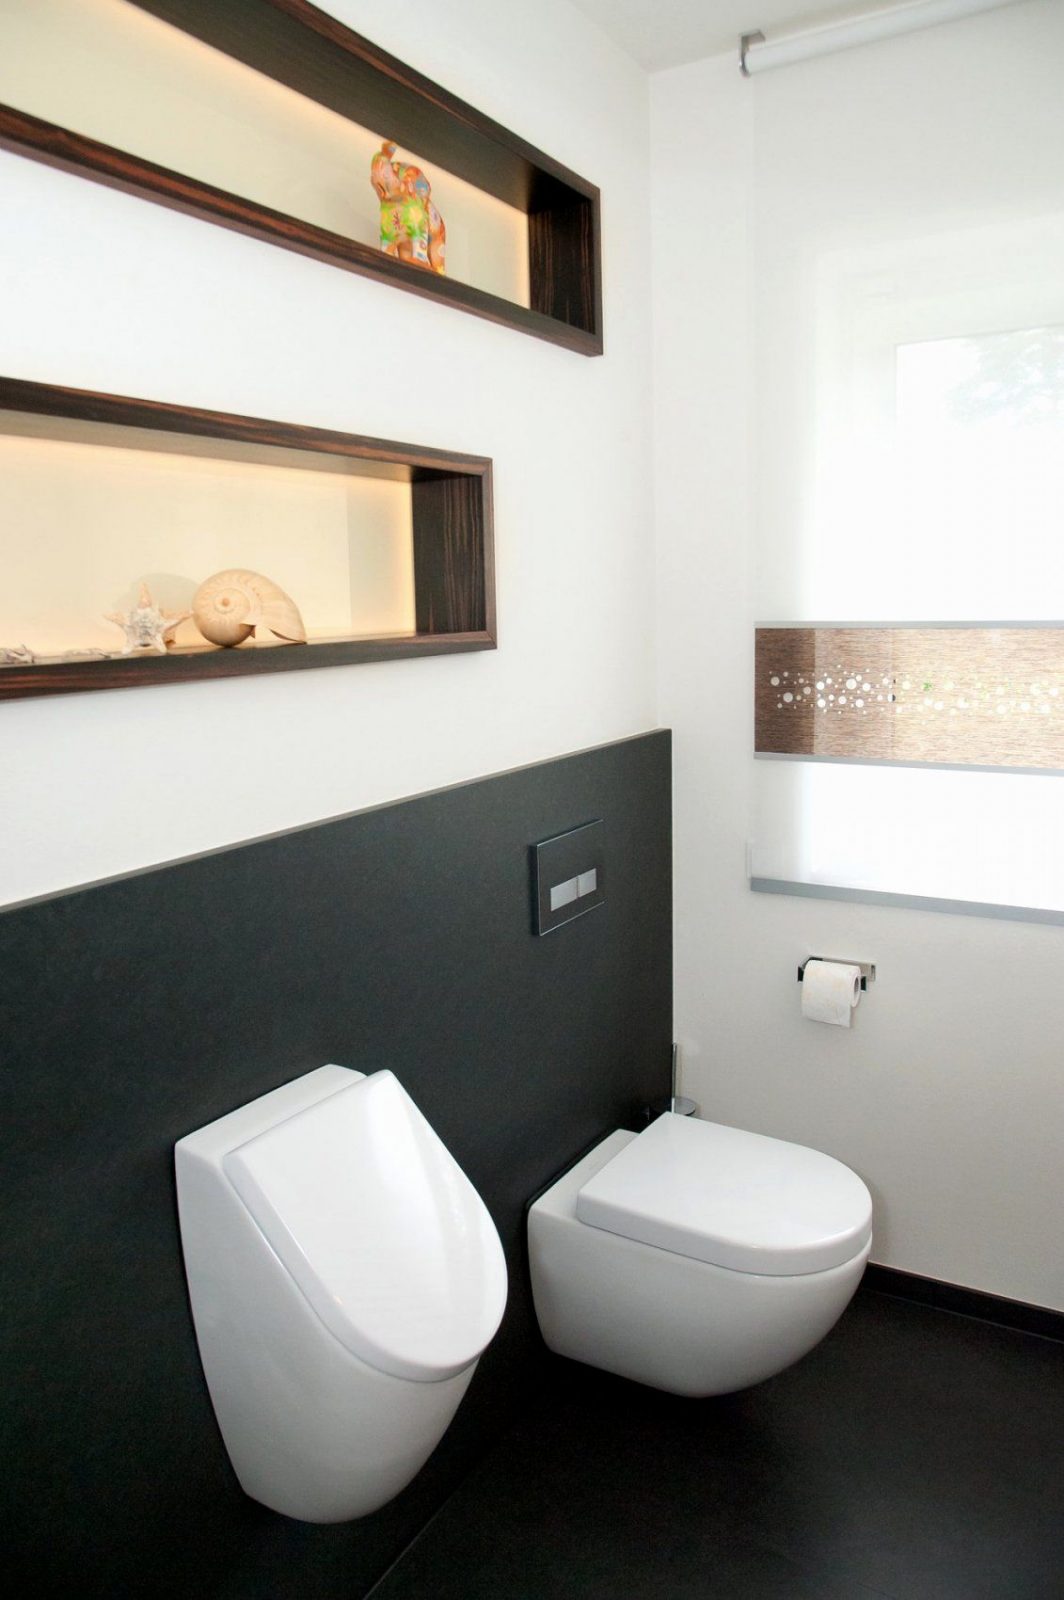 Gäste Wc Renovieren Kosten Inspirierende Deko Fur Toilette  Blog77 von Deko Für Gäste Wc Bild